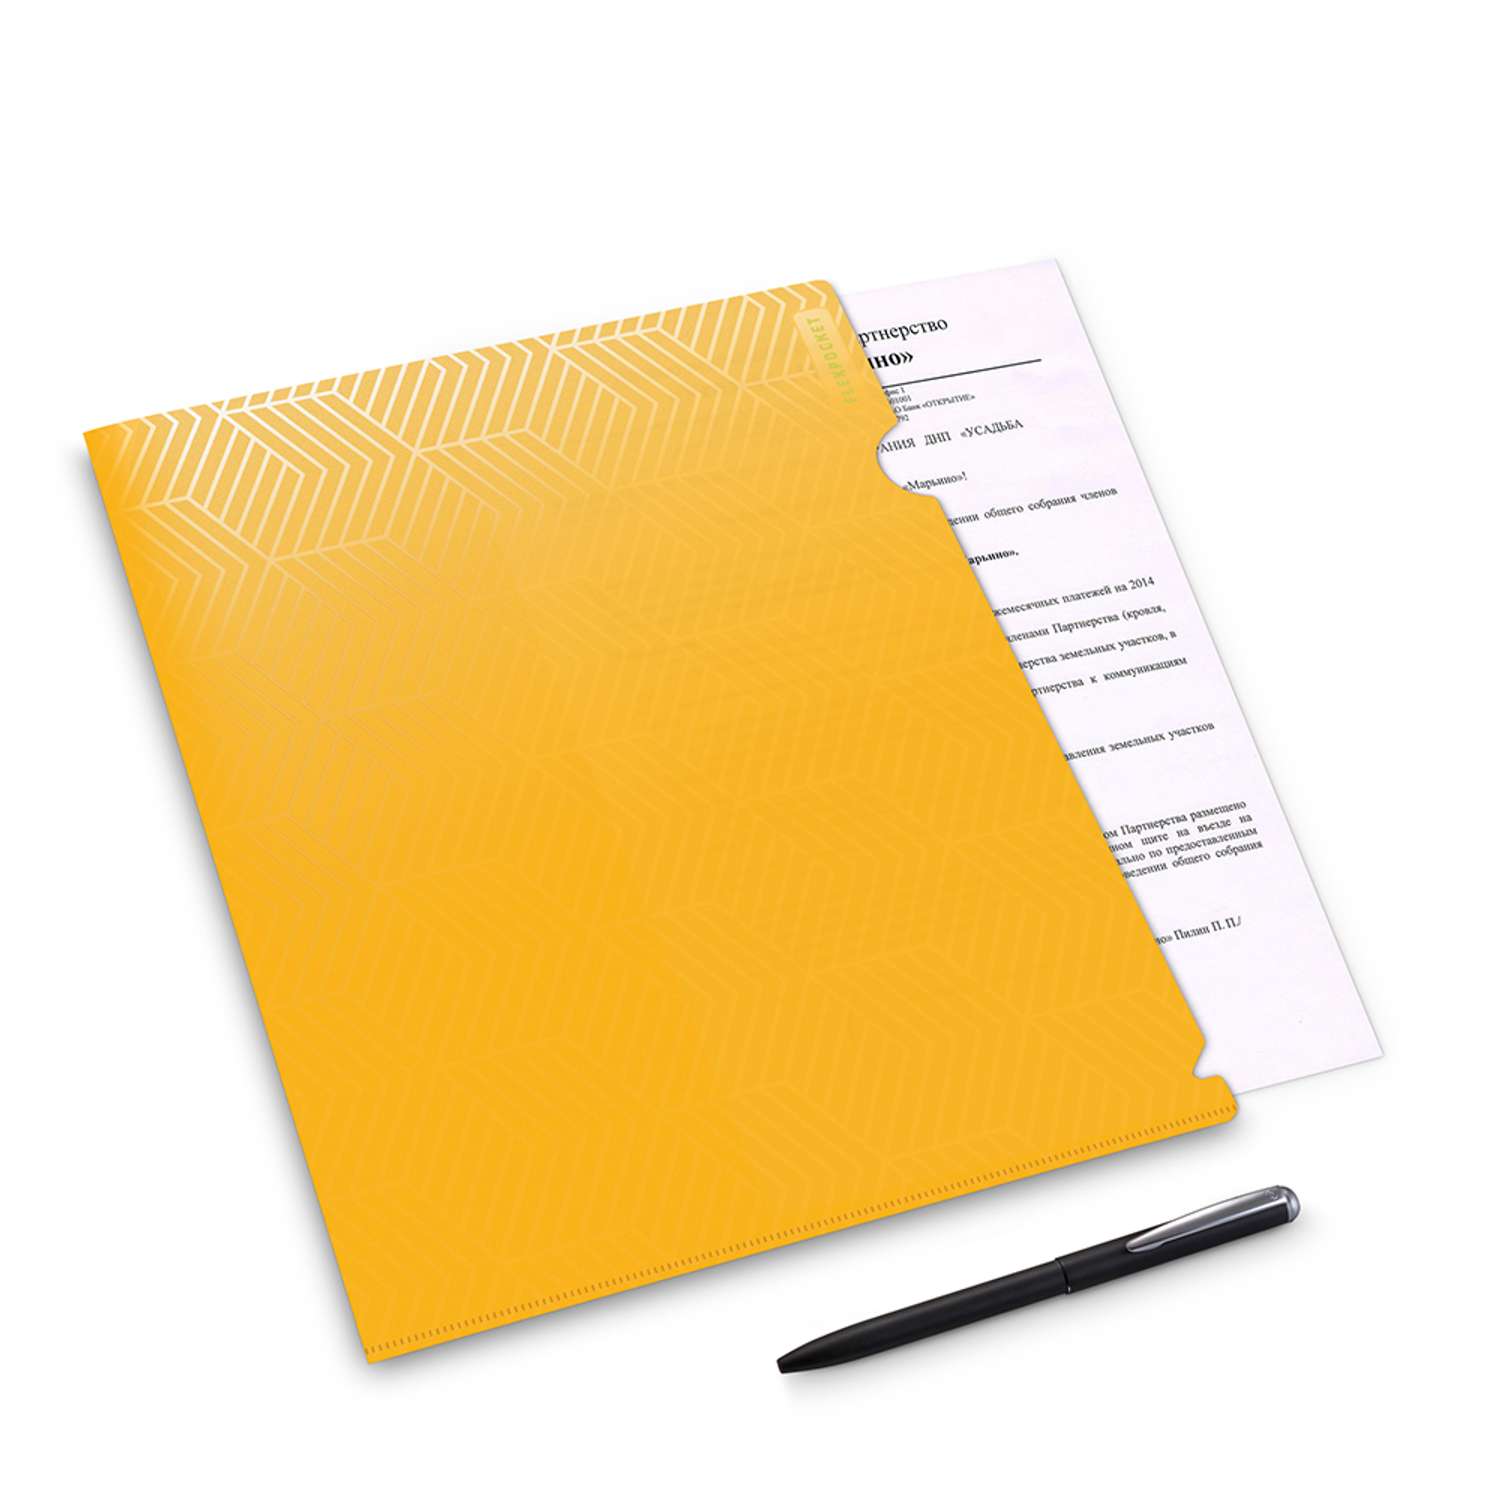 Папка-уголок для документов Flexpocket канцелярская желтого цвета в комплекте 2 шт - фото 2